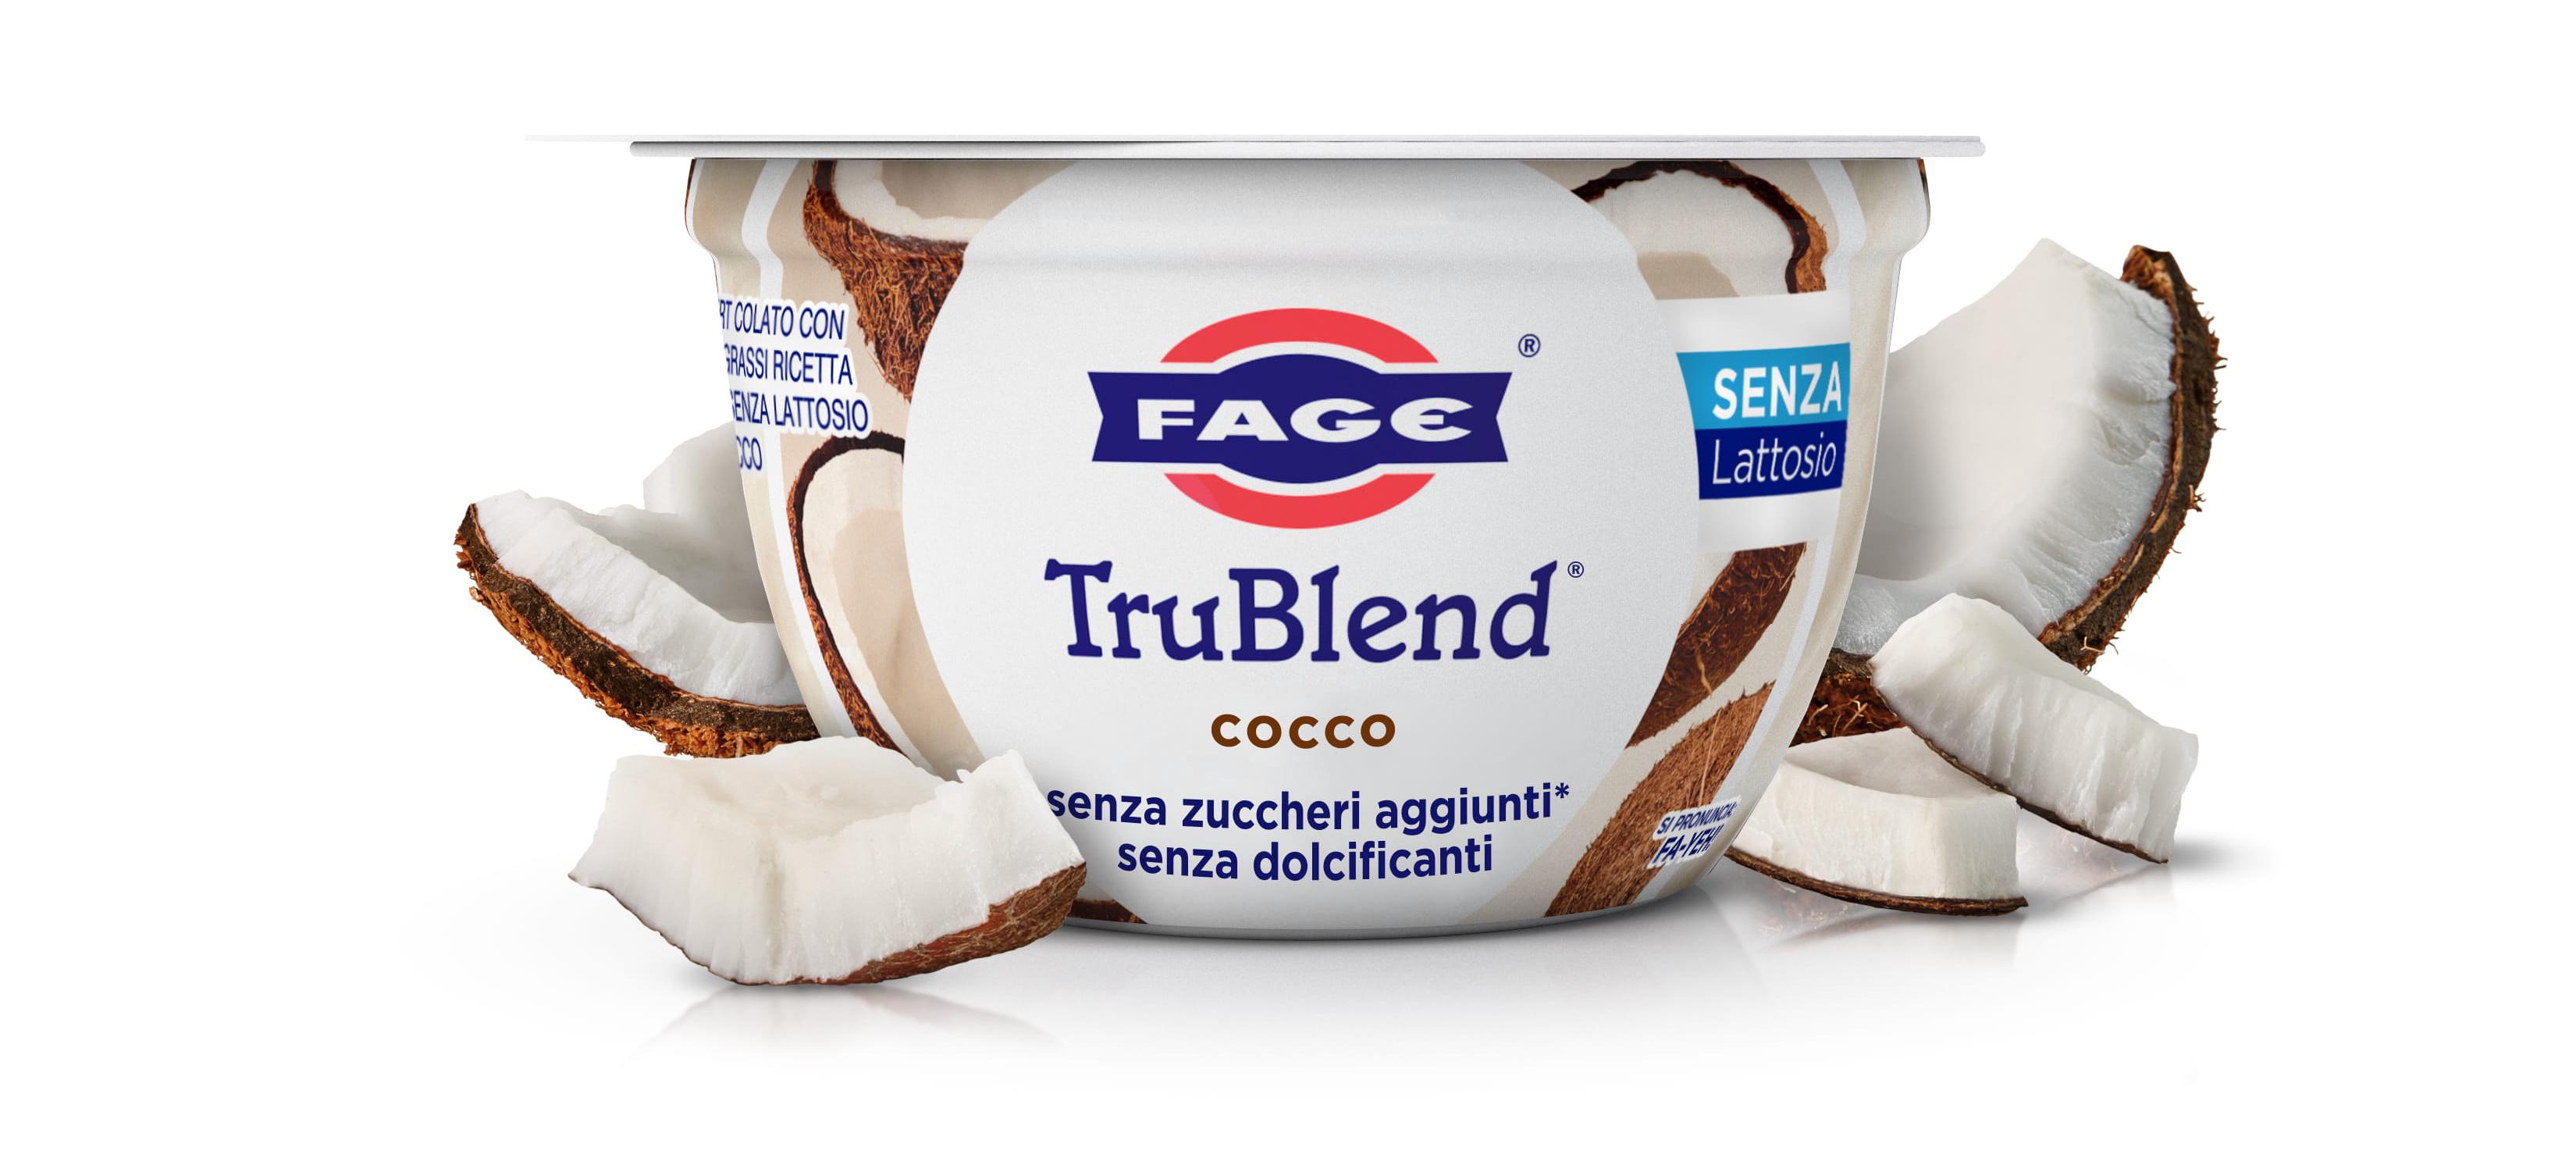 FAGE TruBlend Cocco Senza Lattosio 